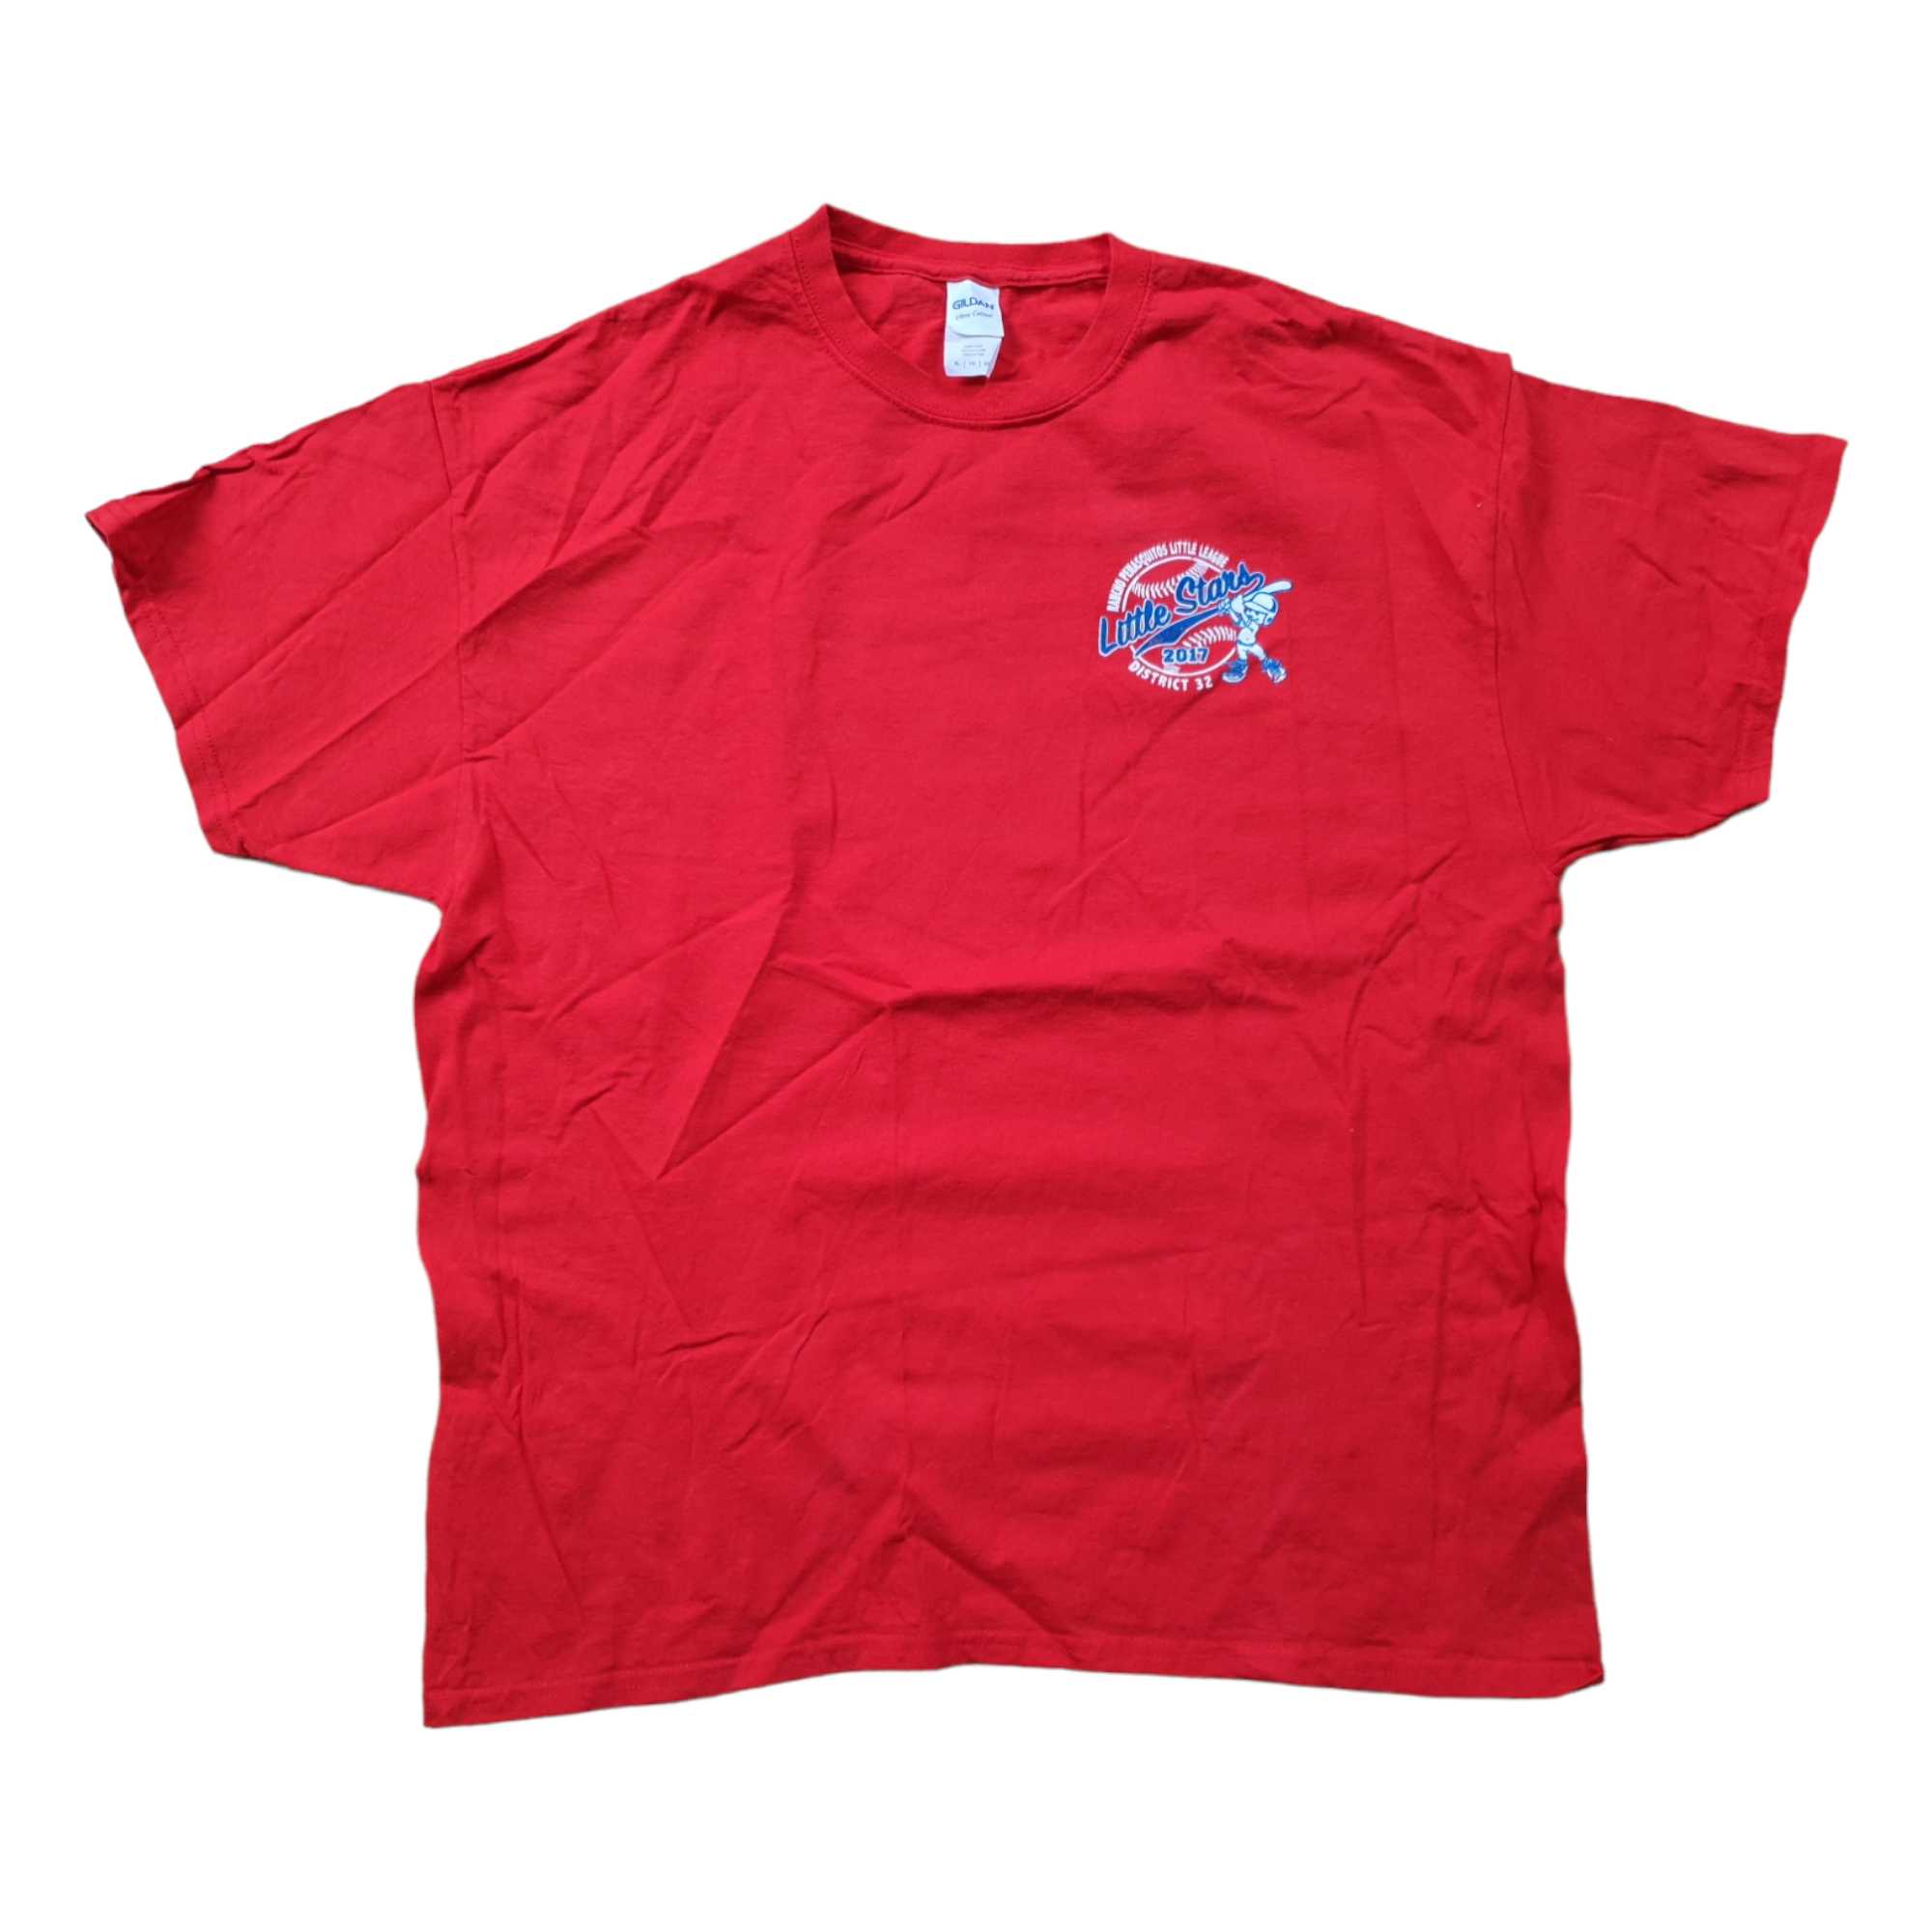 [XL] Gildan Little Stars T-Shirt